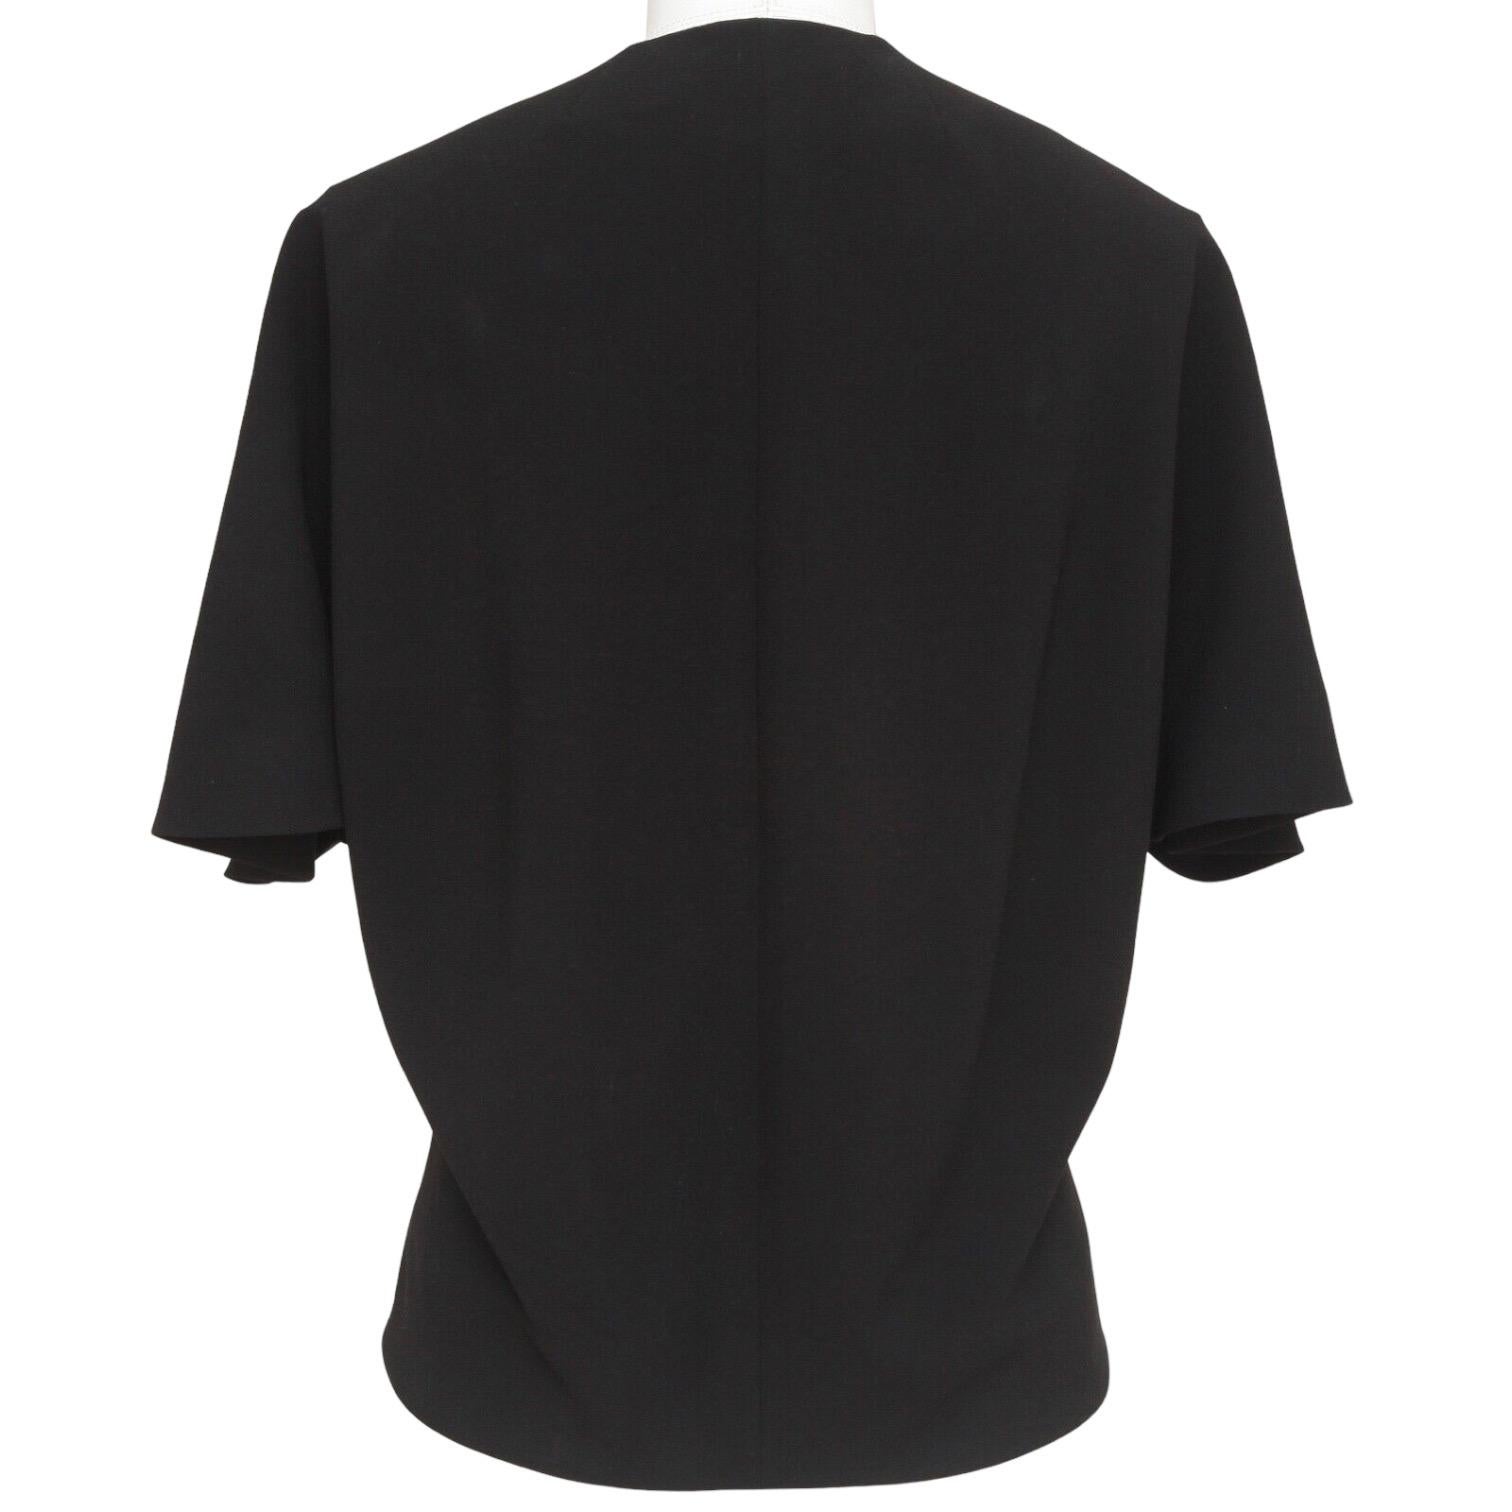 BALENCIAGA.EDITION Blouse Top Shirt BLACK Cape Sleeve Button Down Sz 36 3